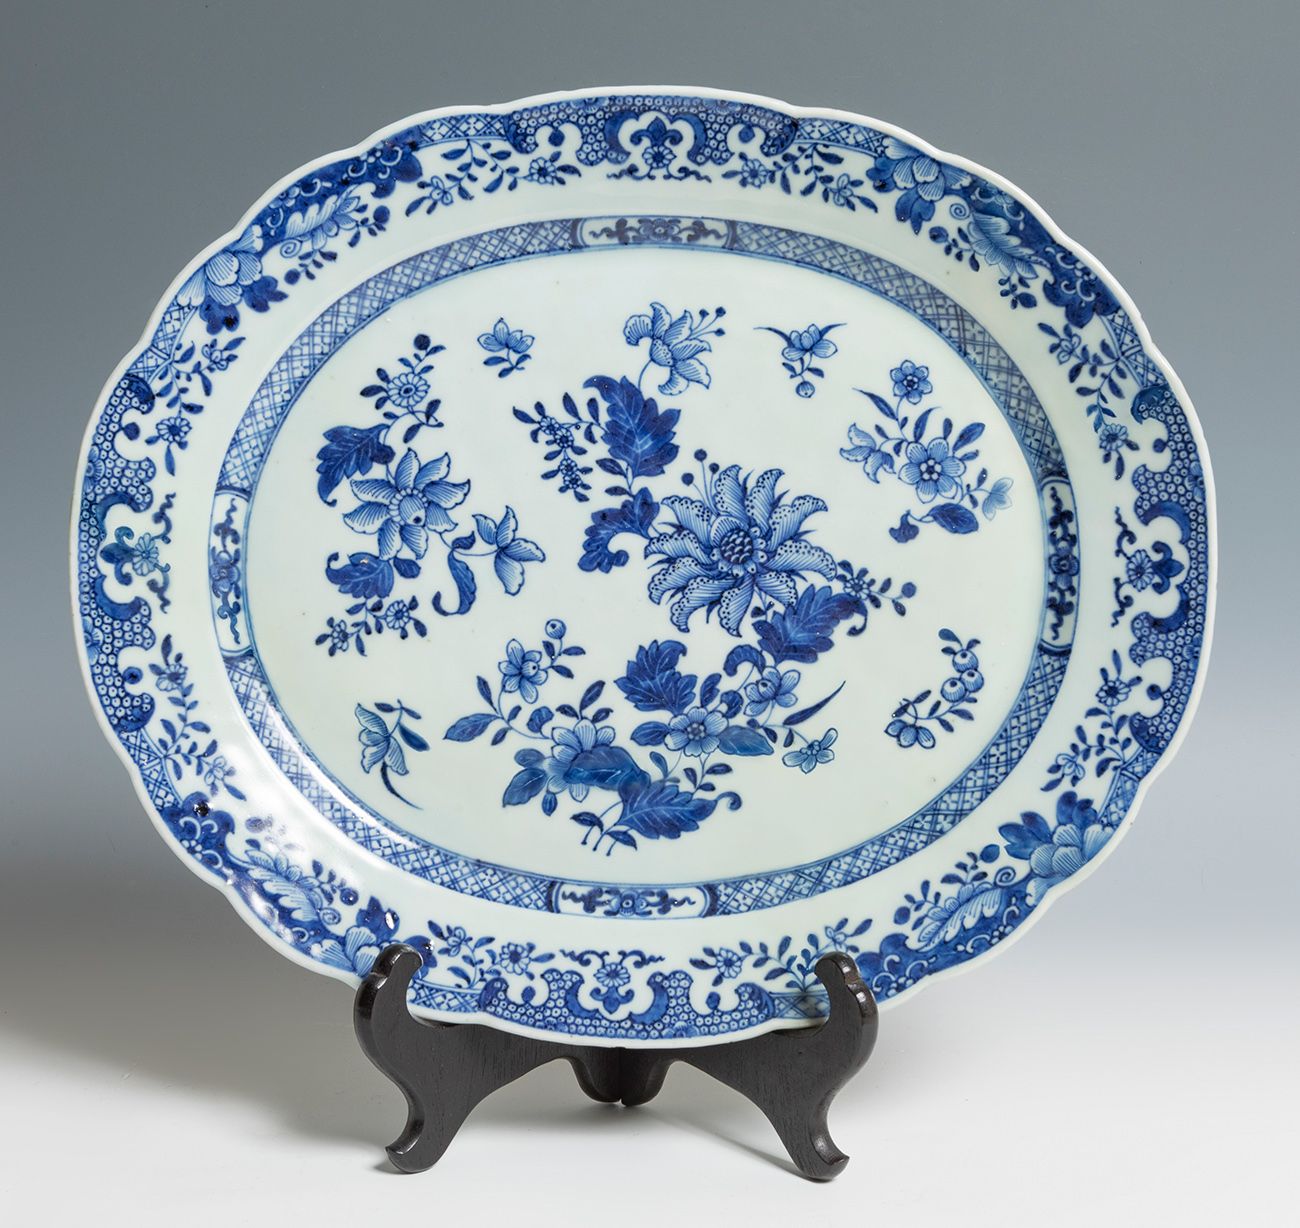 Null Plateau. Chine, XVIIIe siècle.
Porcelaine émaillée.
Mesures : 38 x 32 cm.
P&hellip;